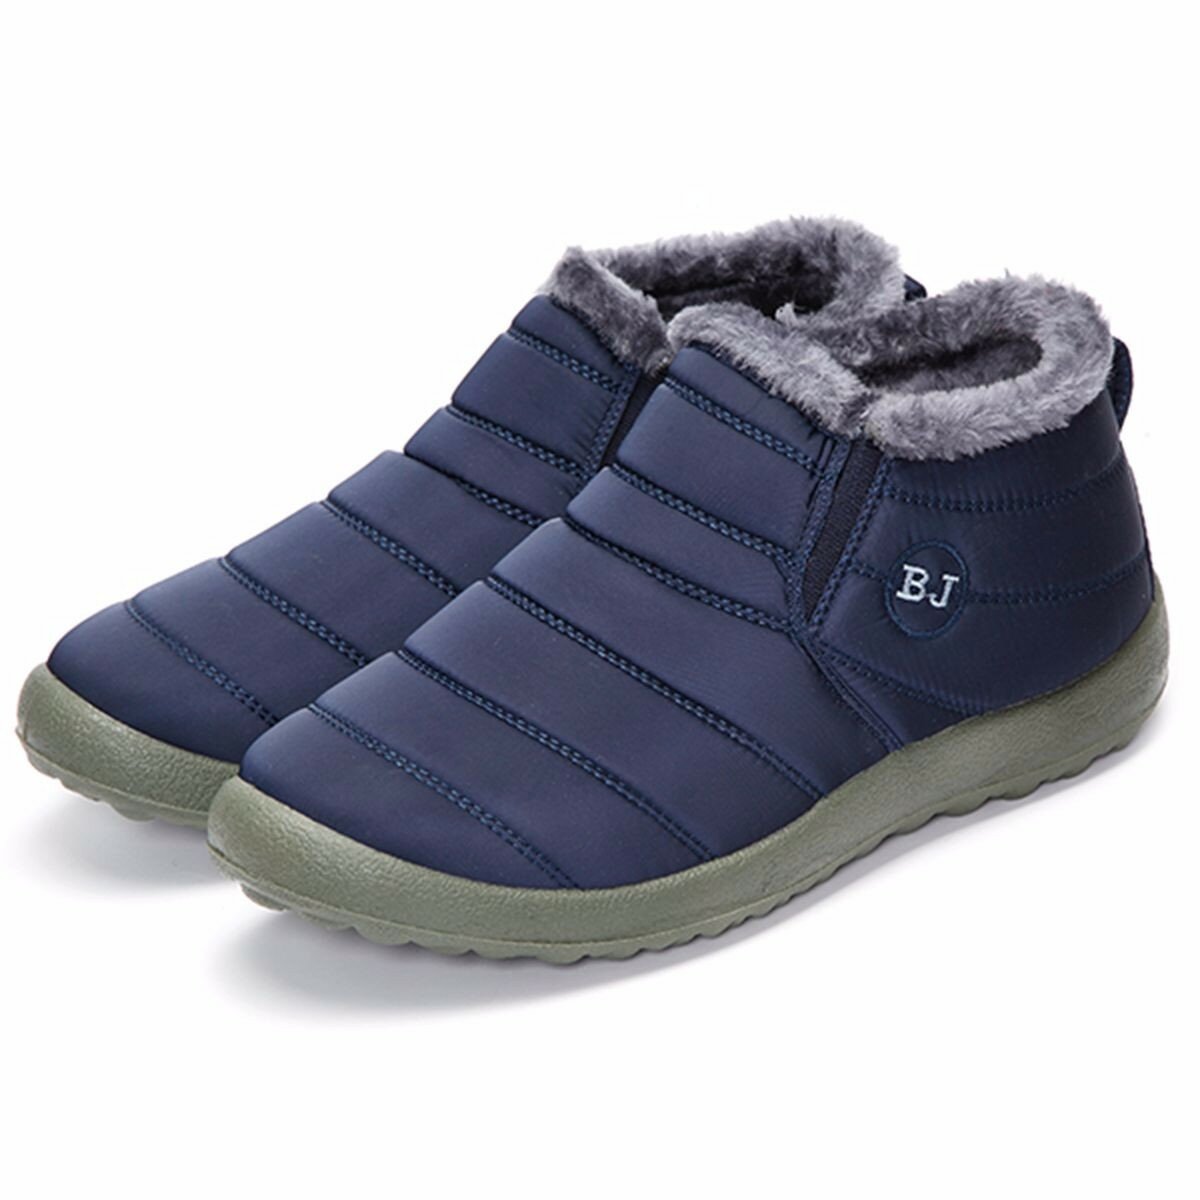 Image of Herren Mnner Winter Baumwolle Schuhe Pelz Futter Wrmehaltung Beilufige Outdoor Schnee Schuhe Stiefel